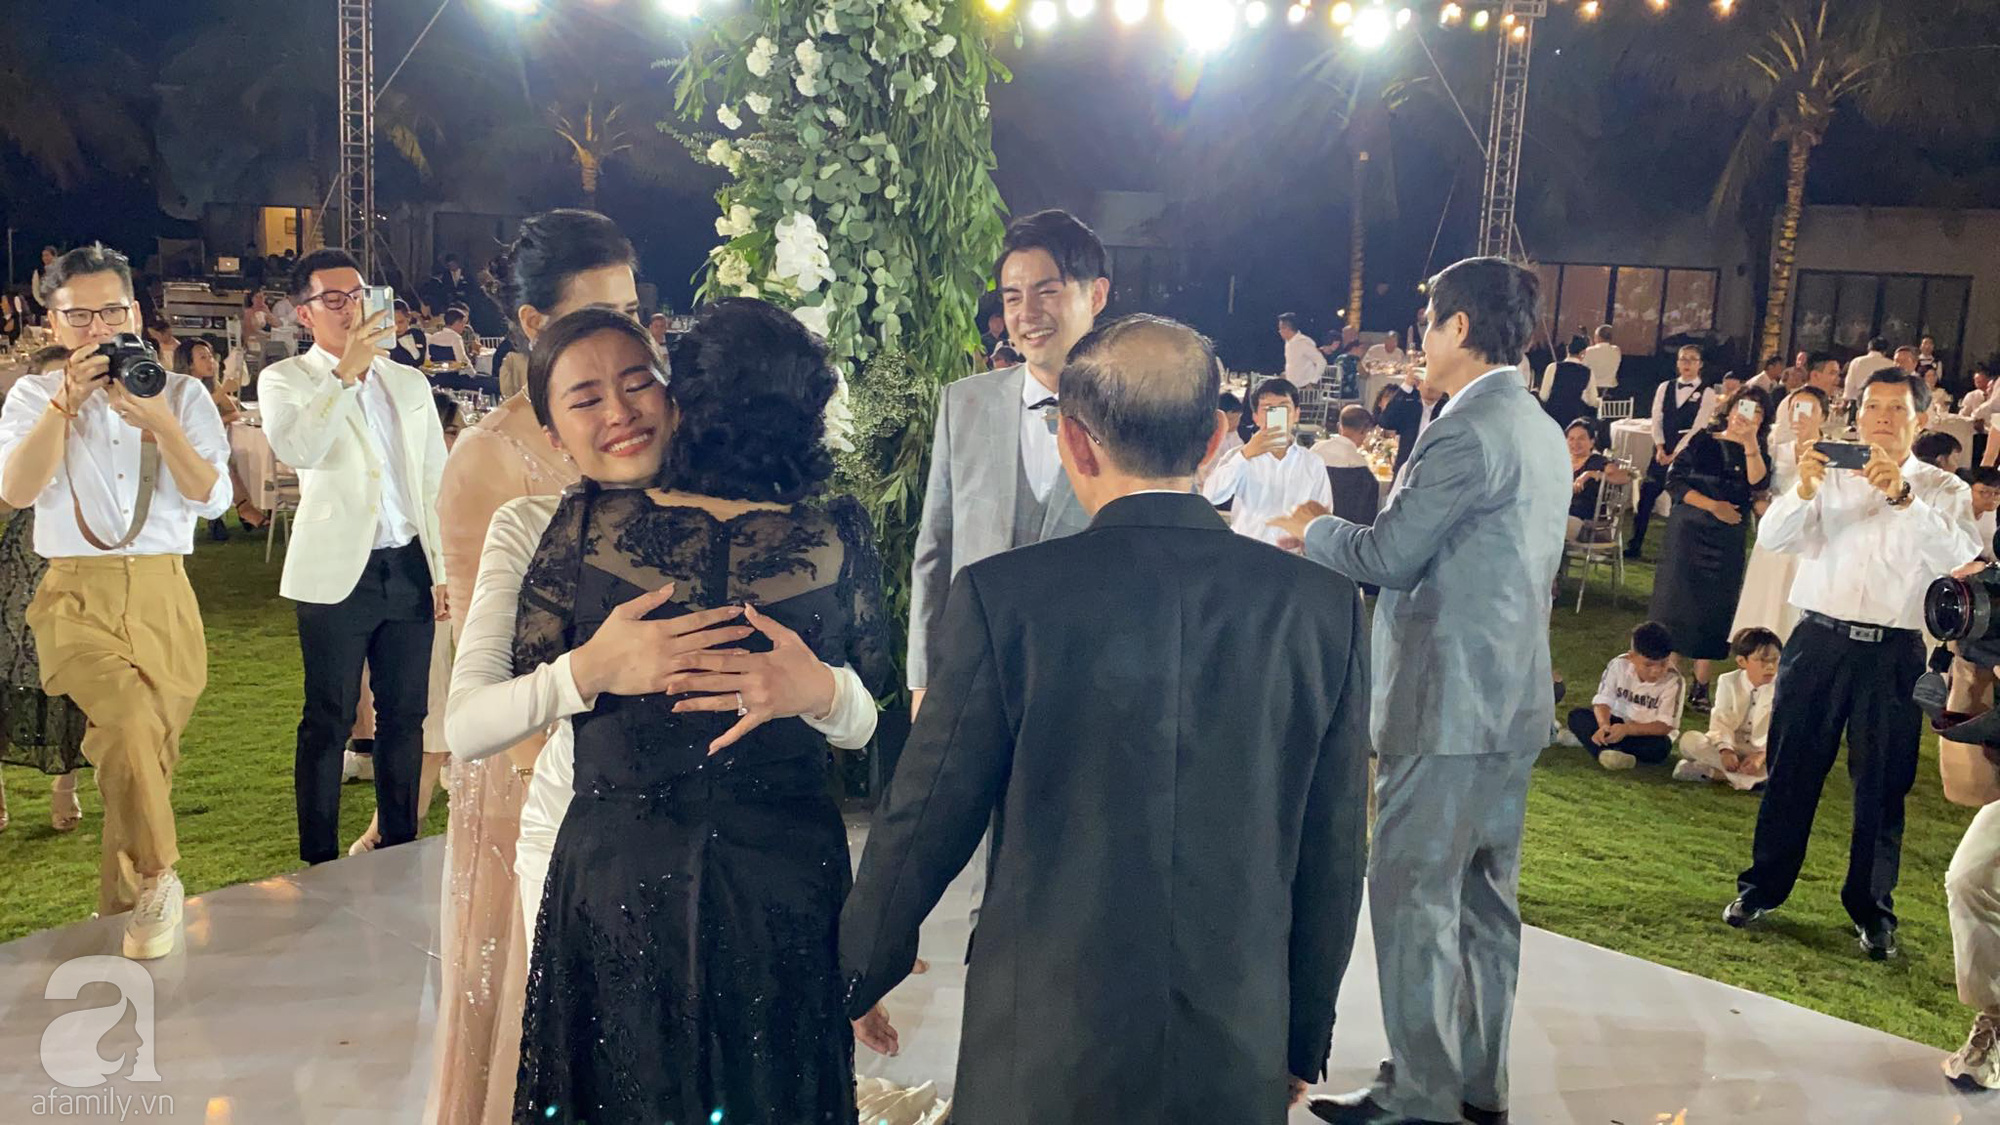 Toàn cảnh đám cưới siêu thế kỷ của Đông Nhi và Ông Cao Thắng: Cô dâu chú rể khóc hết nước mắt khi nhảy cùng bố mẹ hai bên - Ảnh 72.